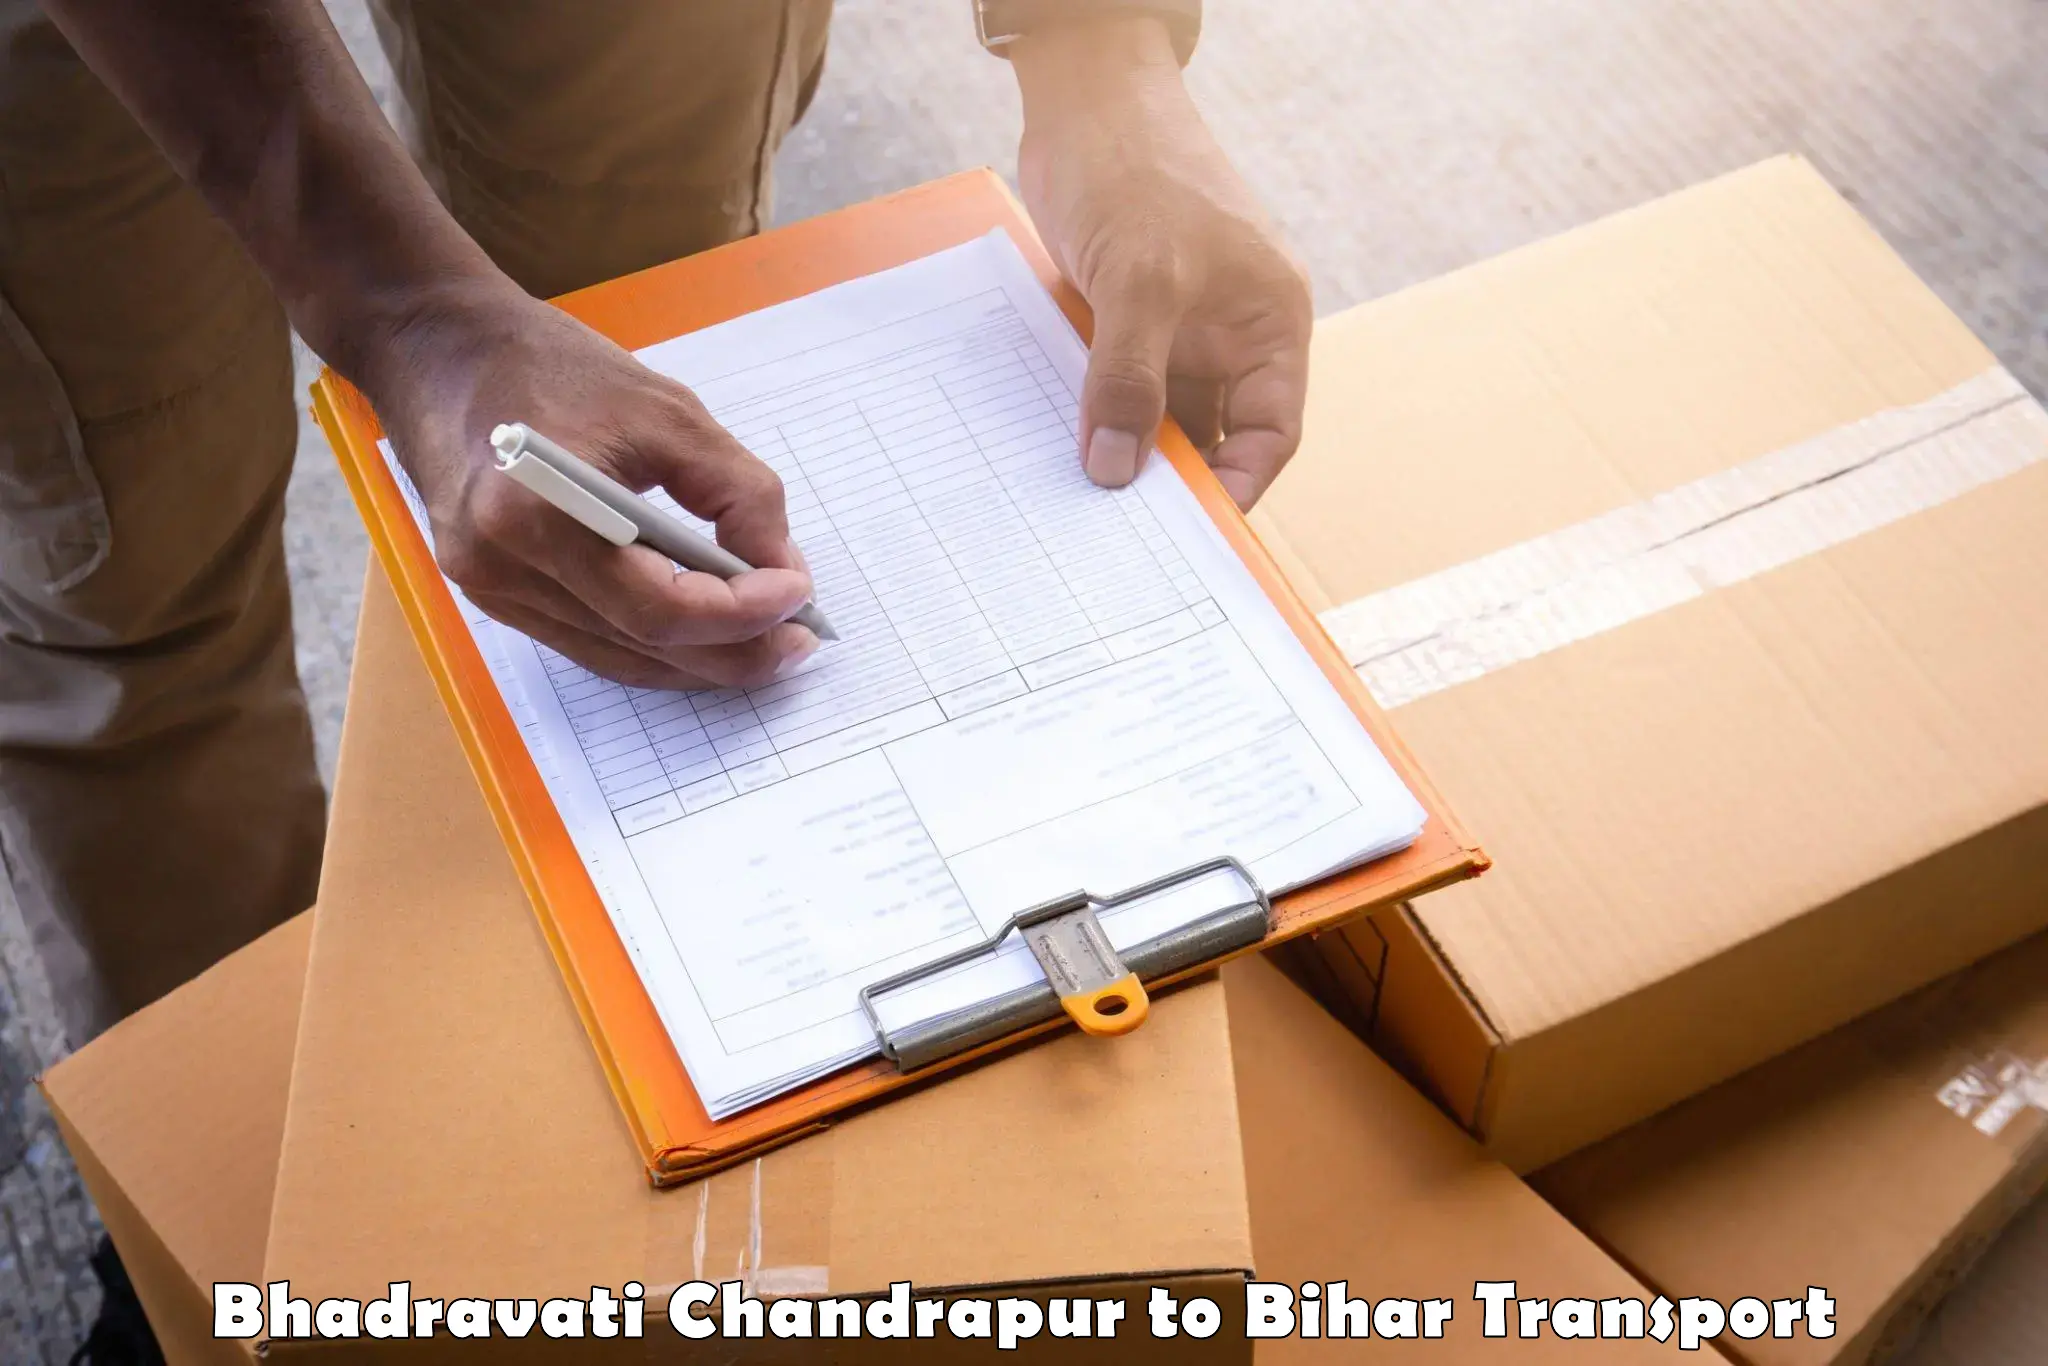 Container transport service Bhadravati Chandrapur to Bharwara